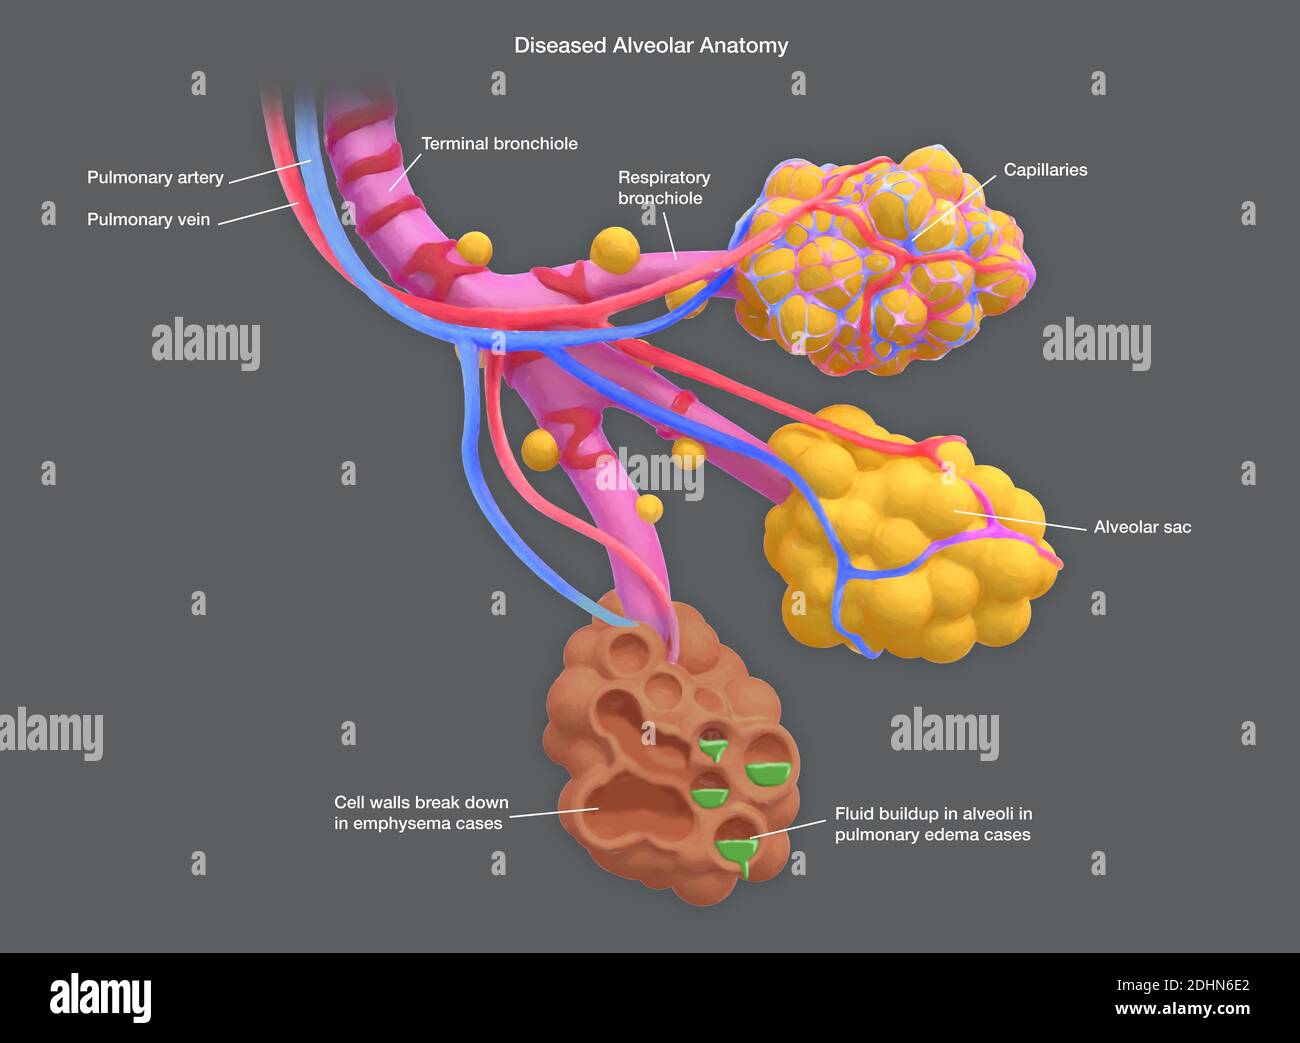 Illustrazione annotata di alveoli umani malati. Gli alveoli sono sacche d'aria nei polmoni, alle estremità dei bronchioli, che consentono lo scambio di ca Foto Stock